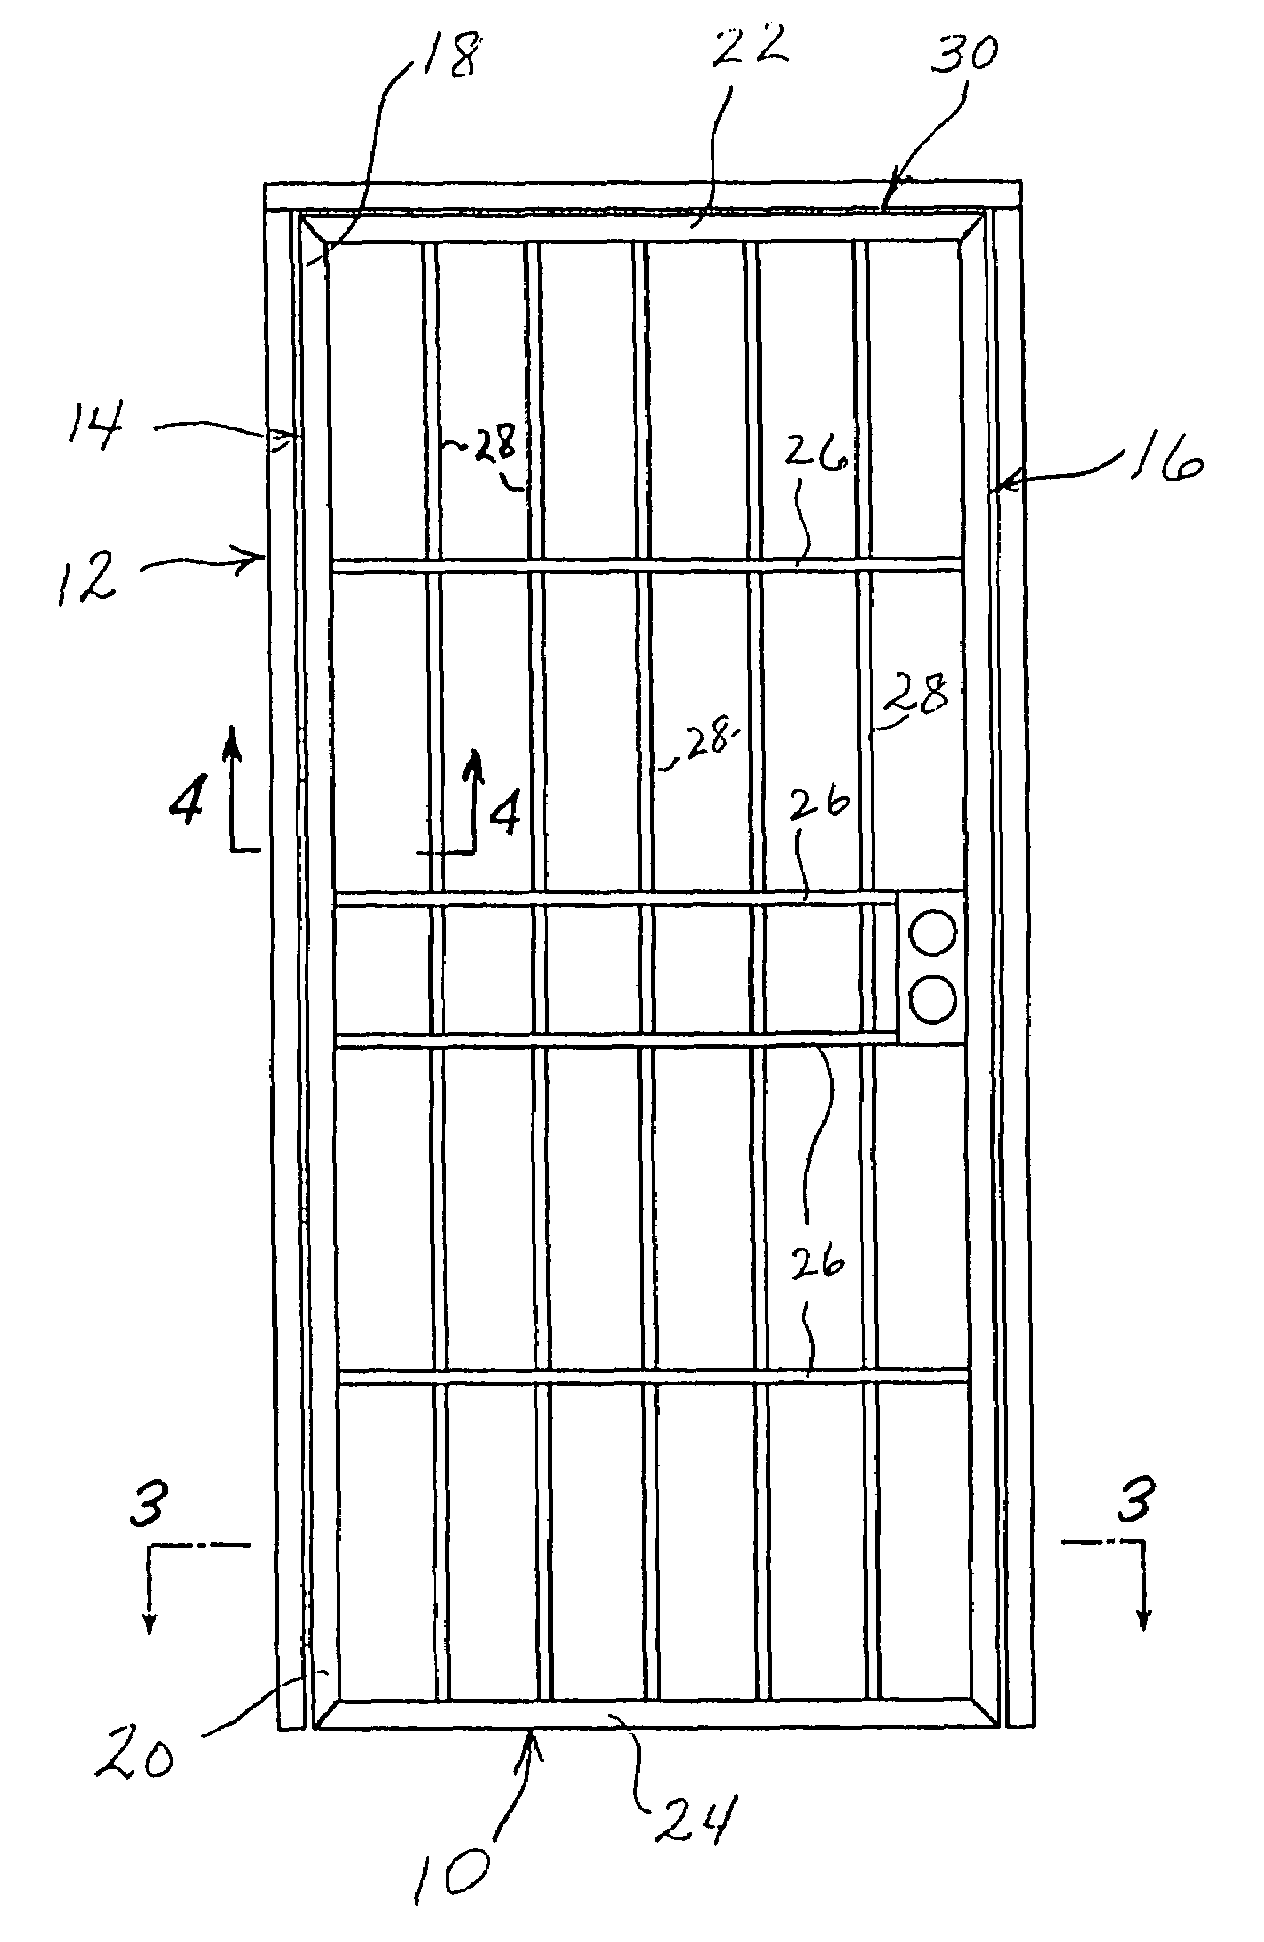 Method of fabricating security door